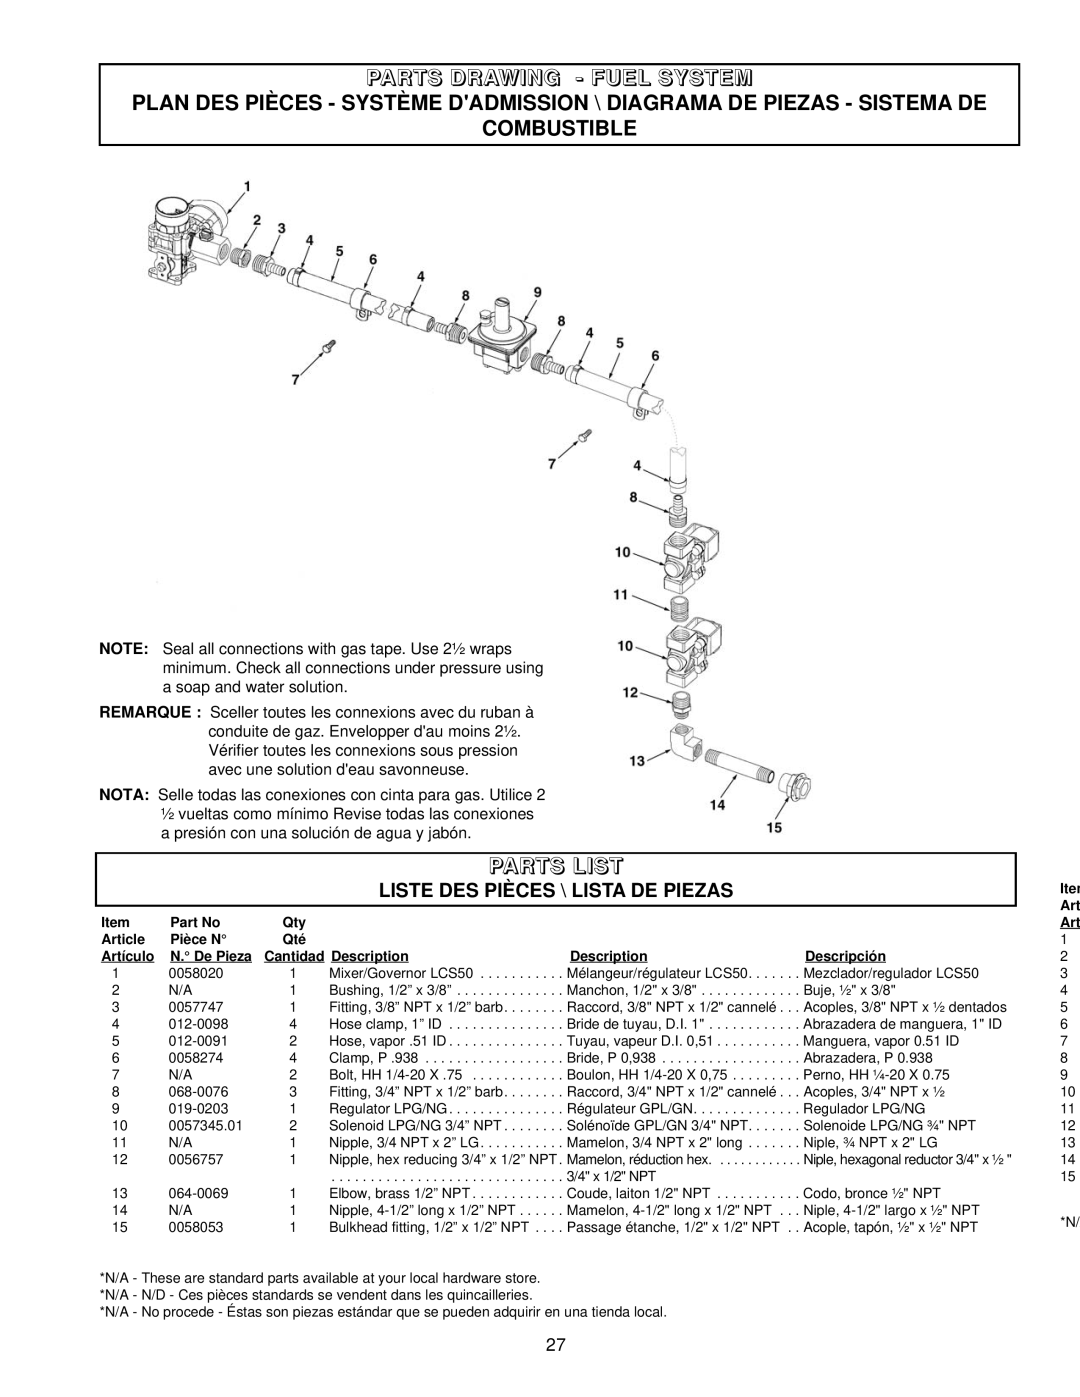 Coleman PM402511 owner manual Parts Drawing - Fuel System, Combustible, Parts List, Liste Des Pièces \ Lista De Piezas 